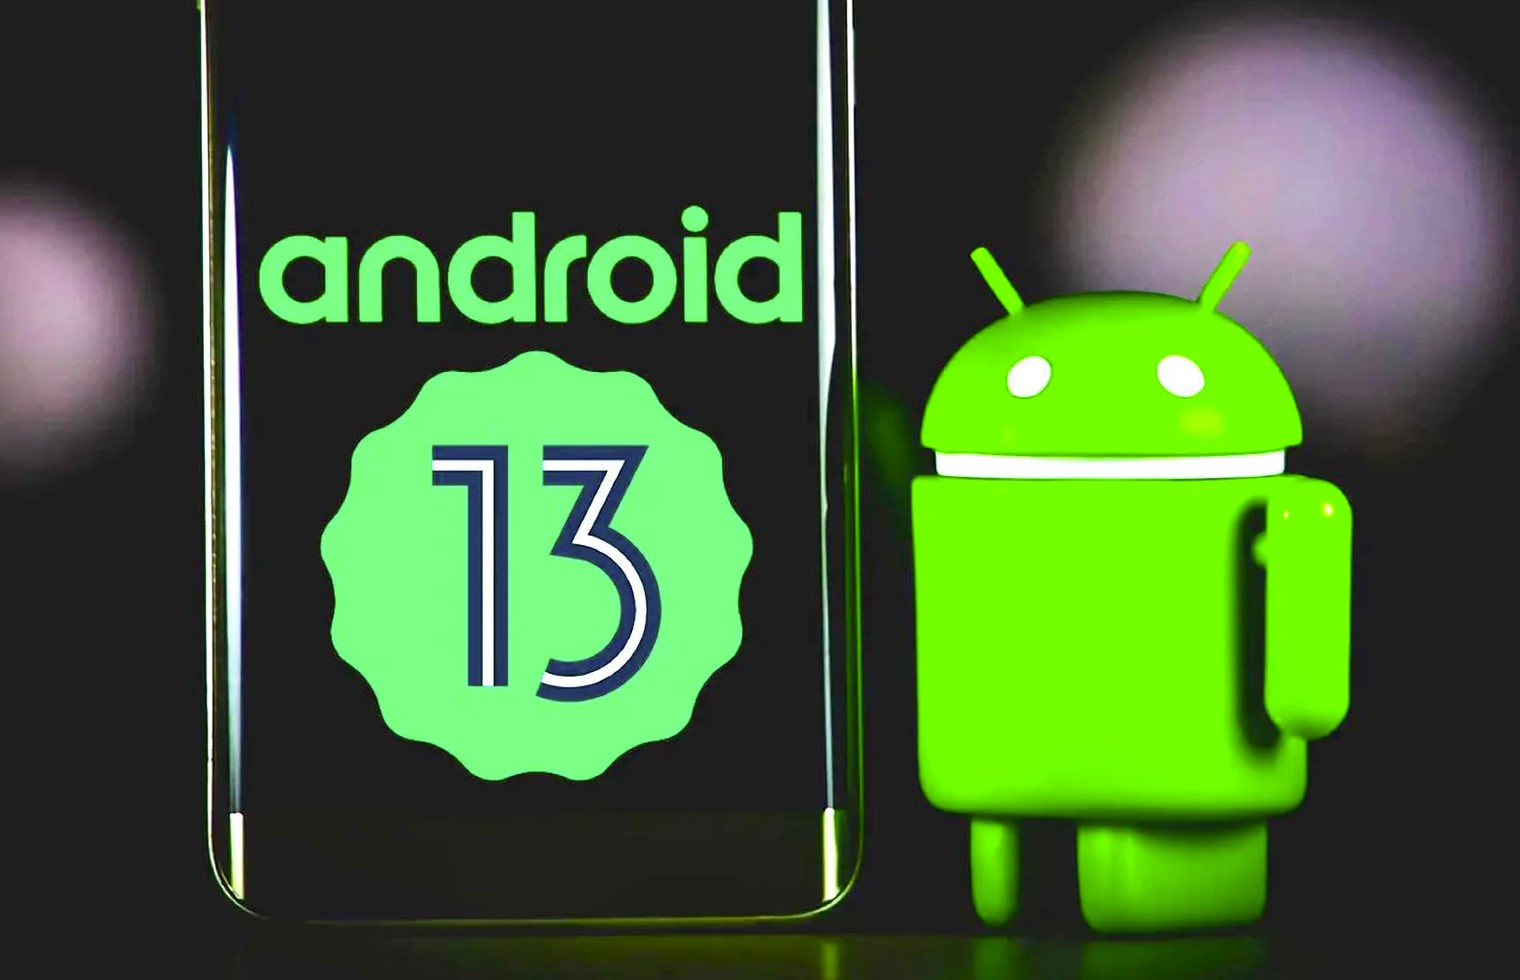 Prawdopodobnie Android 13 zostanie uruchomiony we wrześniu.